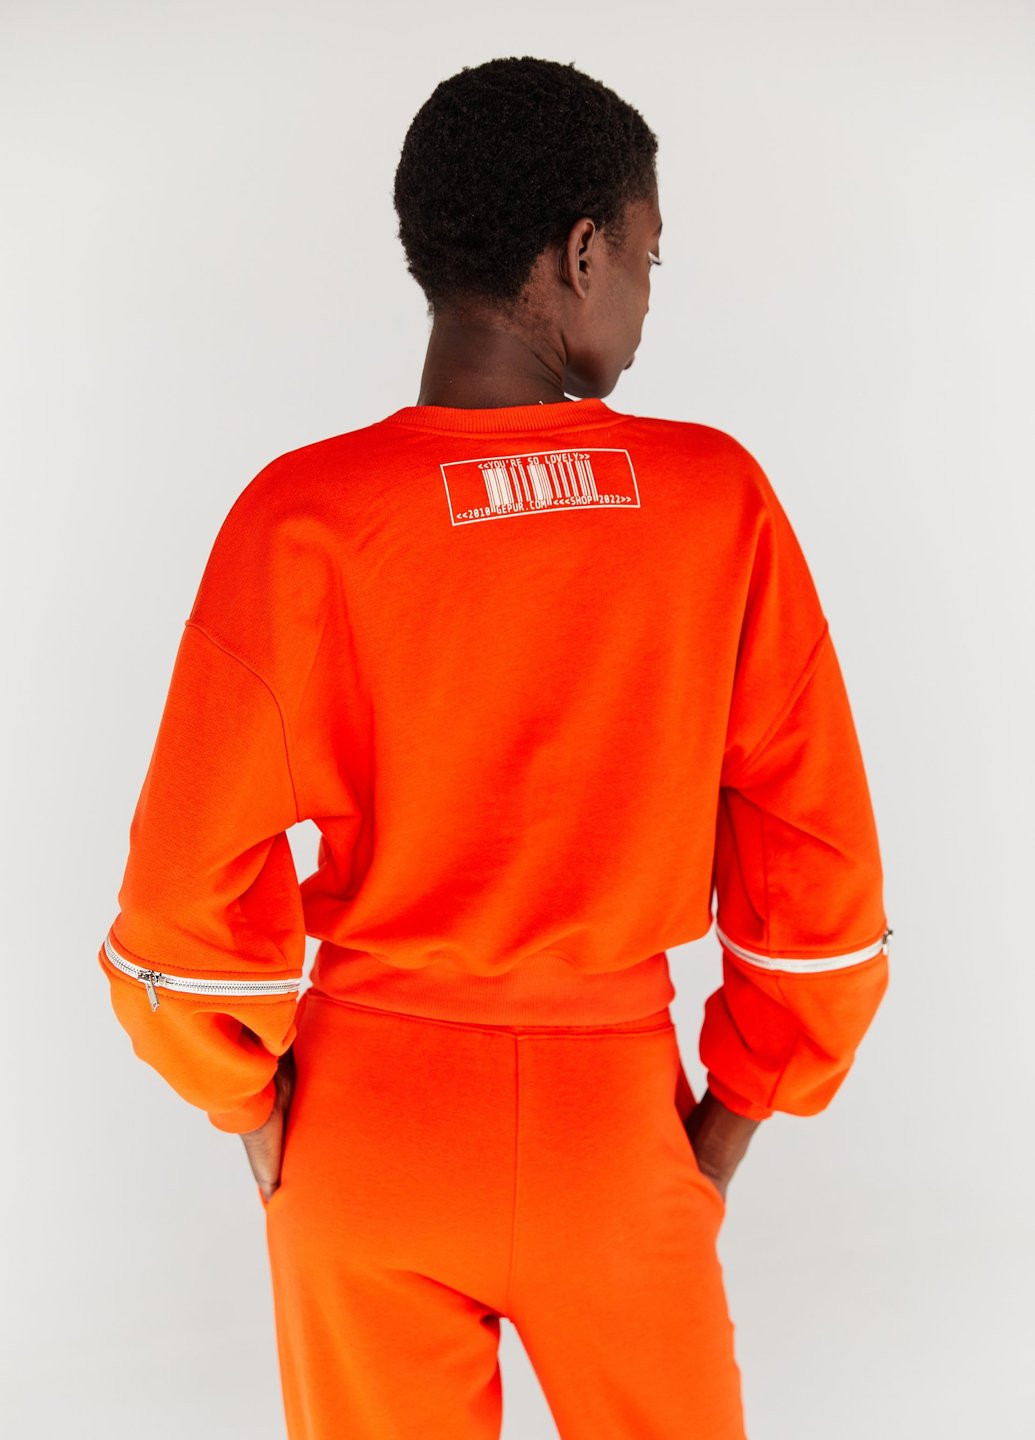 Хлопковый оранжевый свитшот Gepur - крой надпись оранжевый спортивный - (253161928)